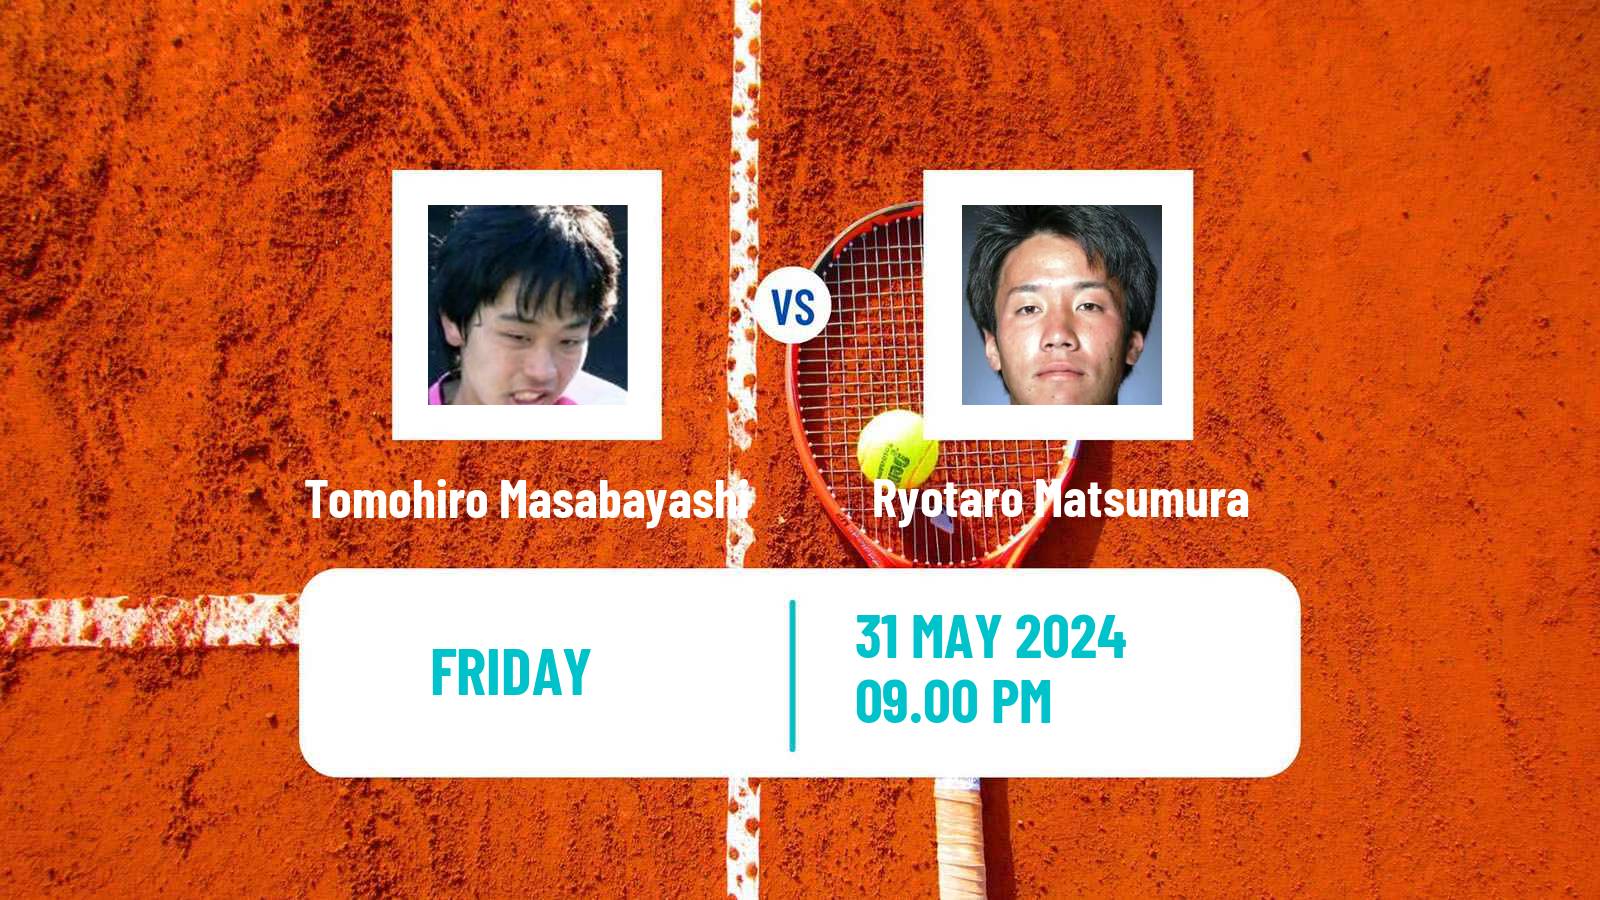 Tennis ITF M15 Karuizawa Men Tomohiro Masabayashi - Ryotaro Matsumura